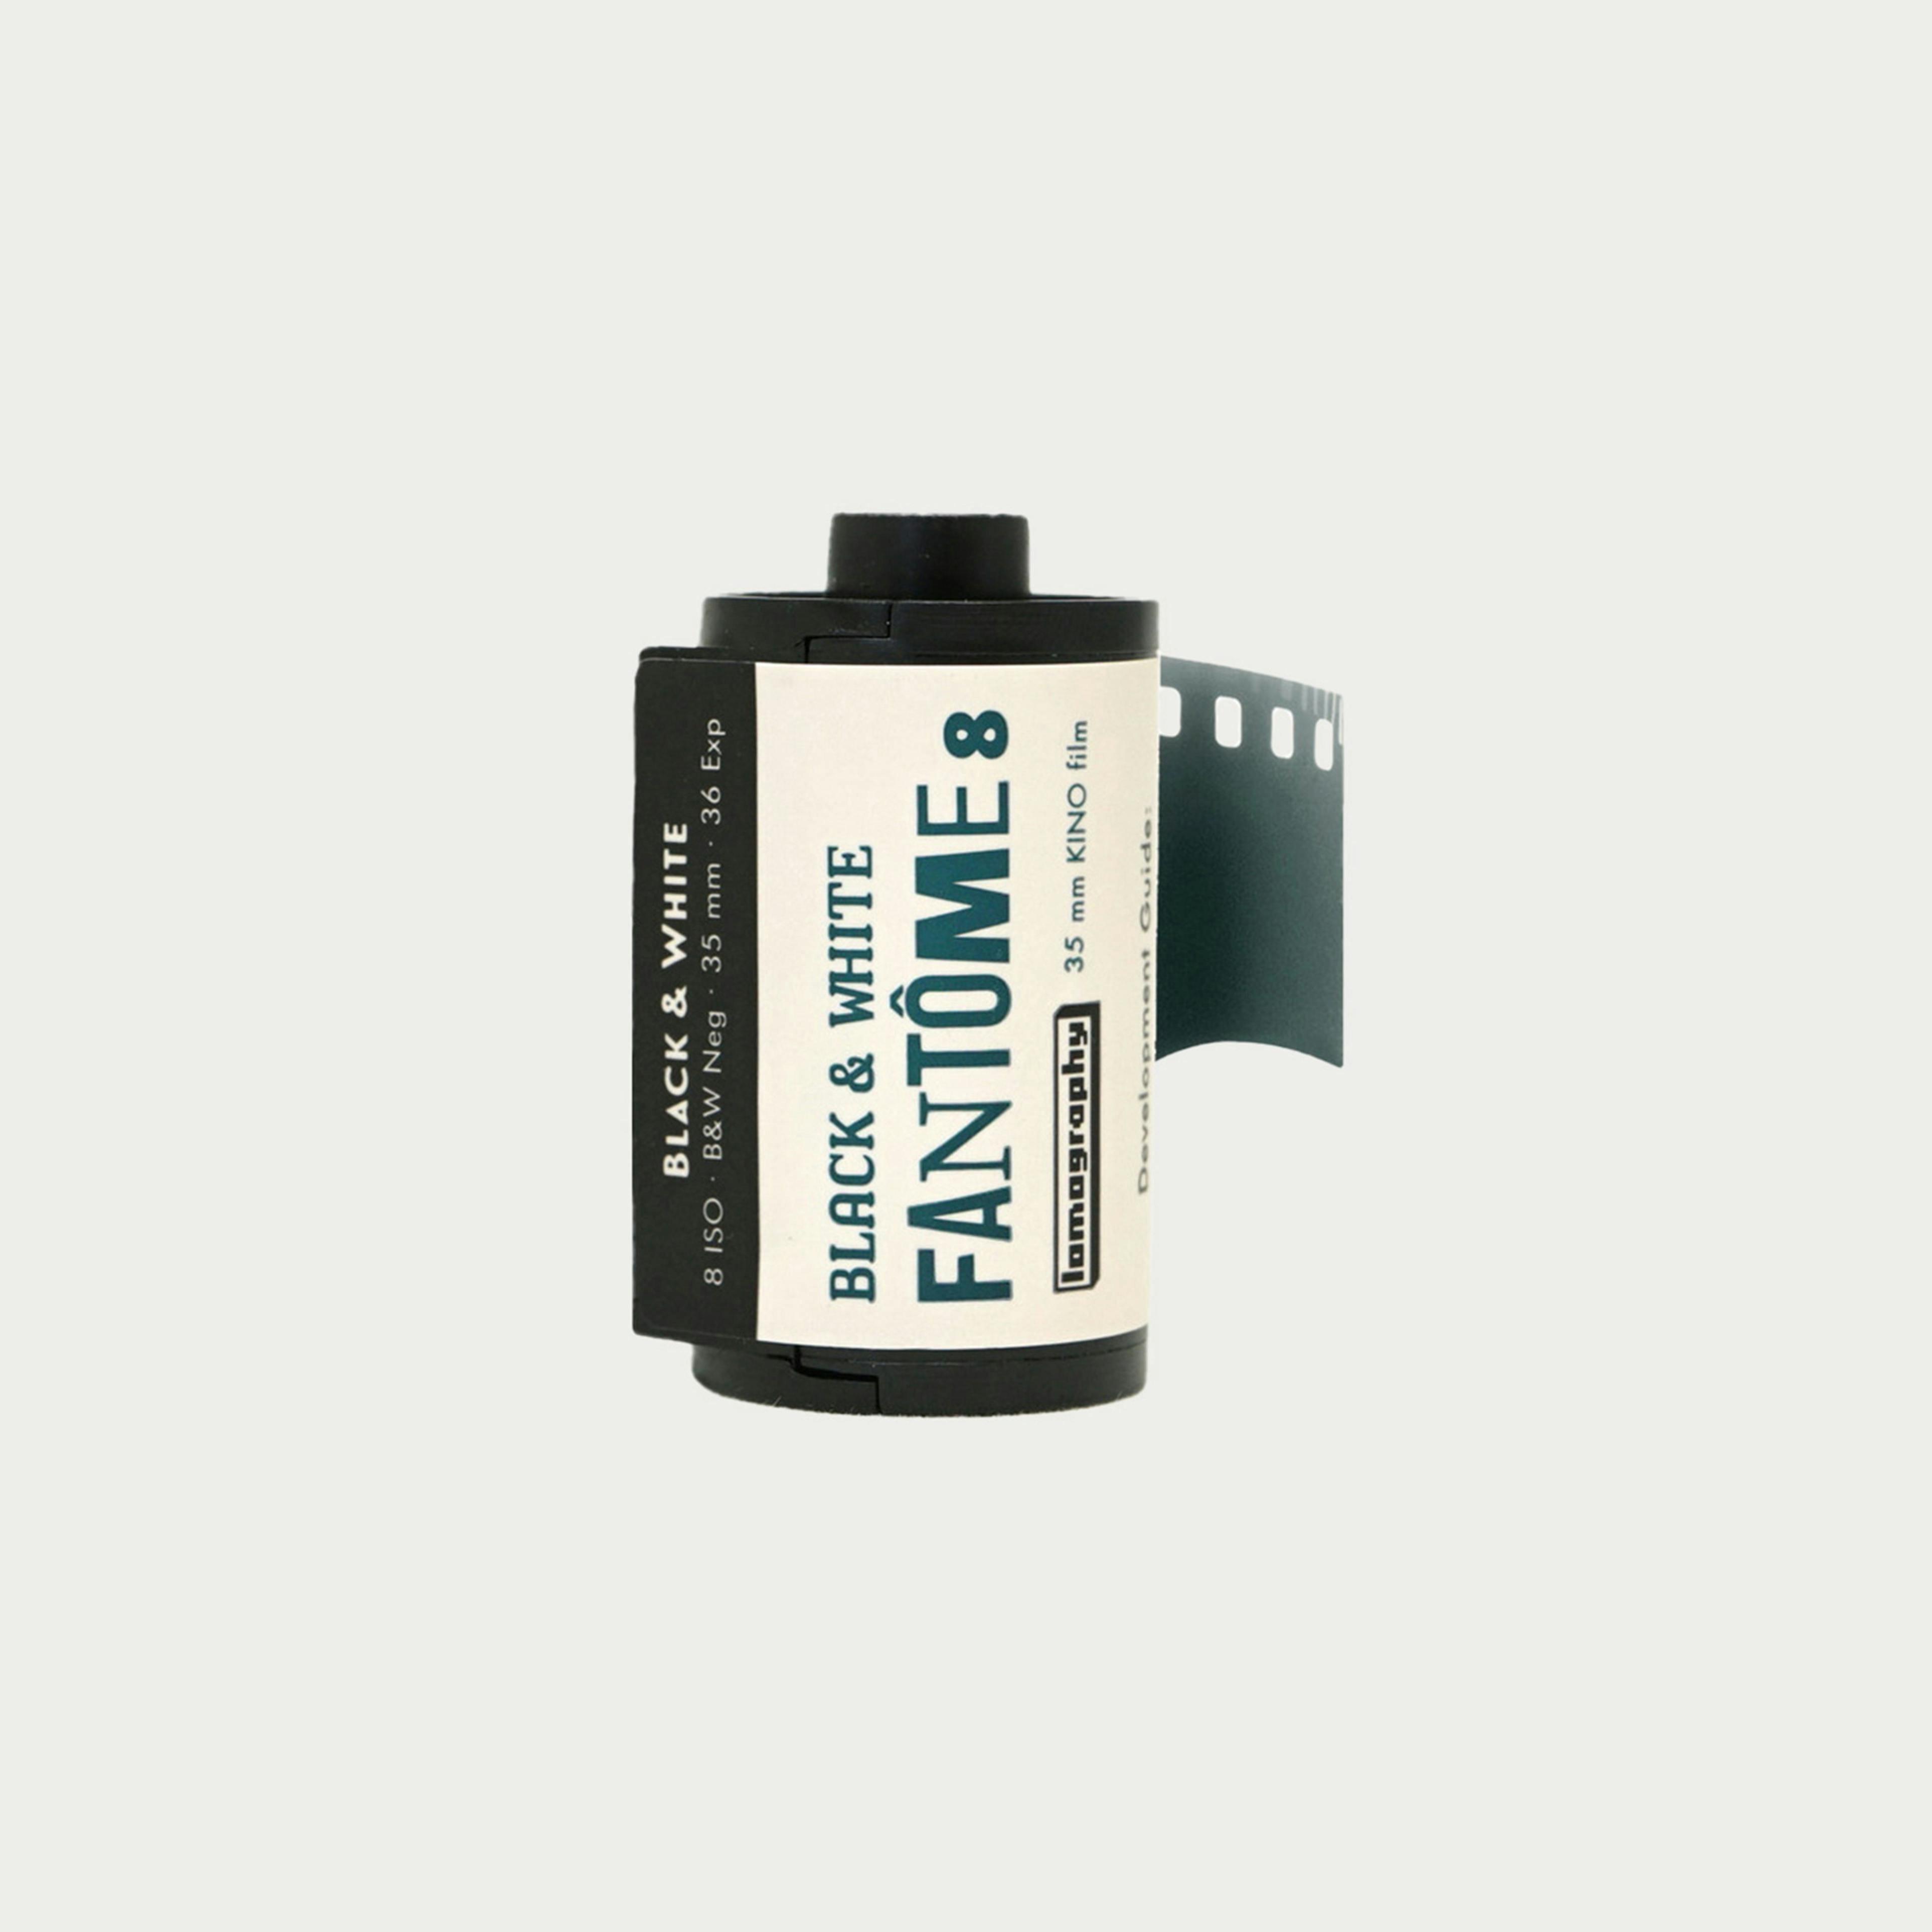 Fantome Kino 8 Black and White Negative 35mm Film